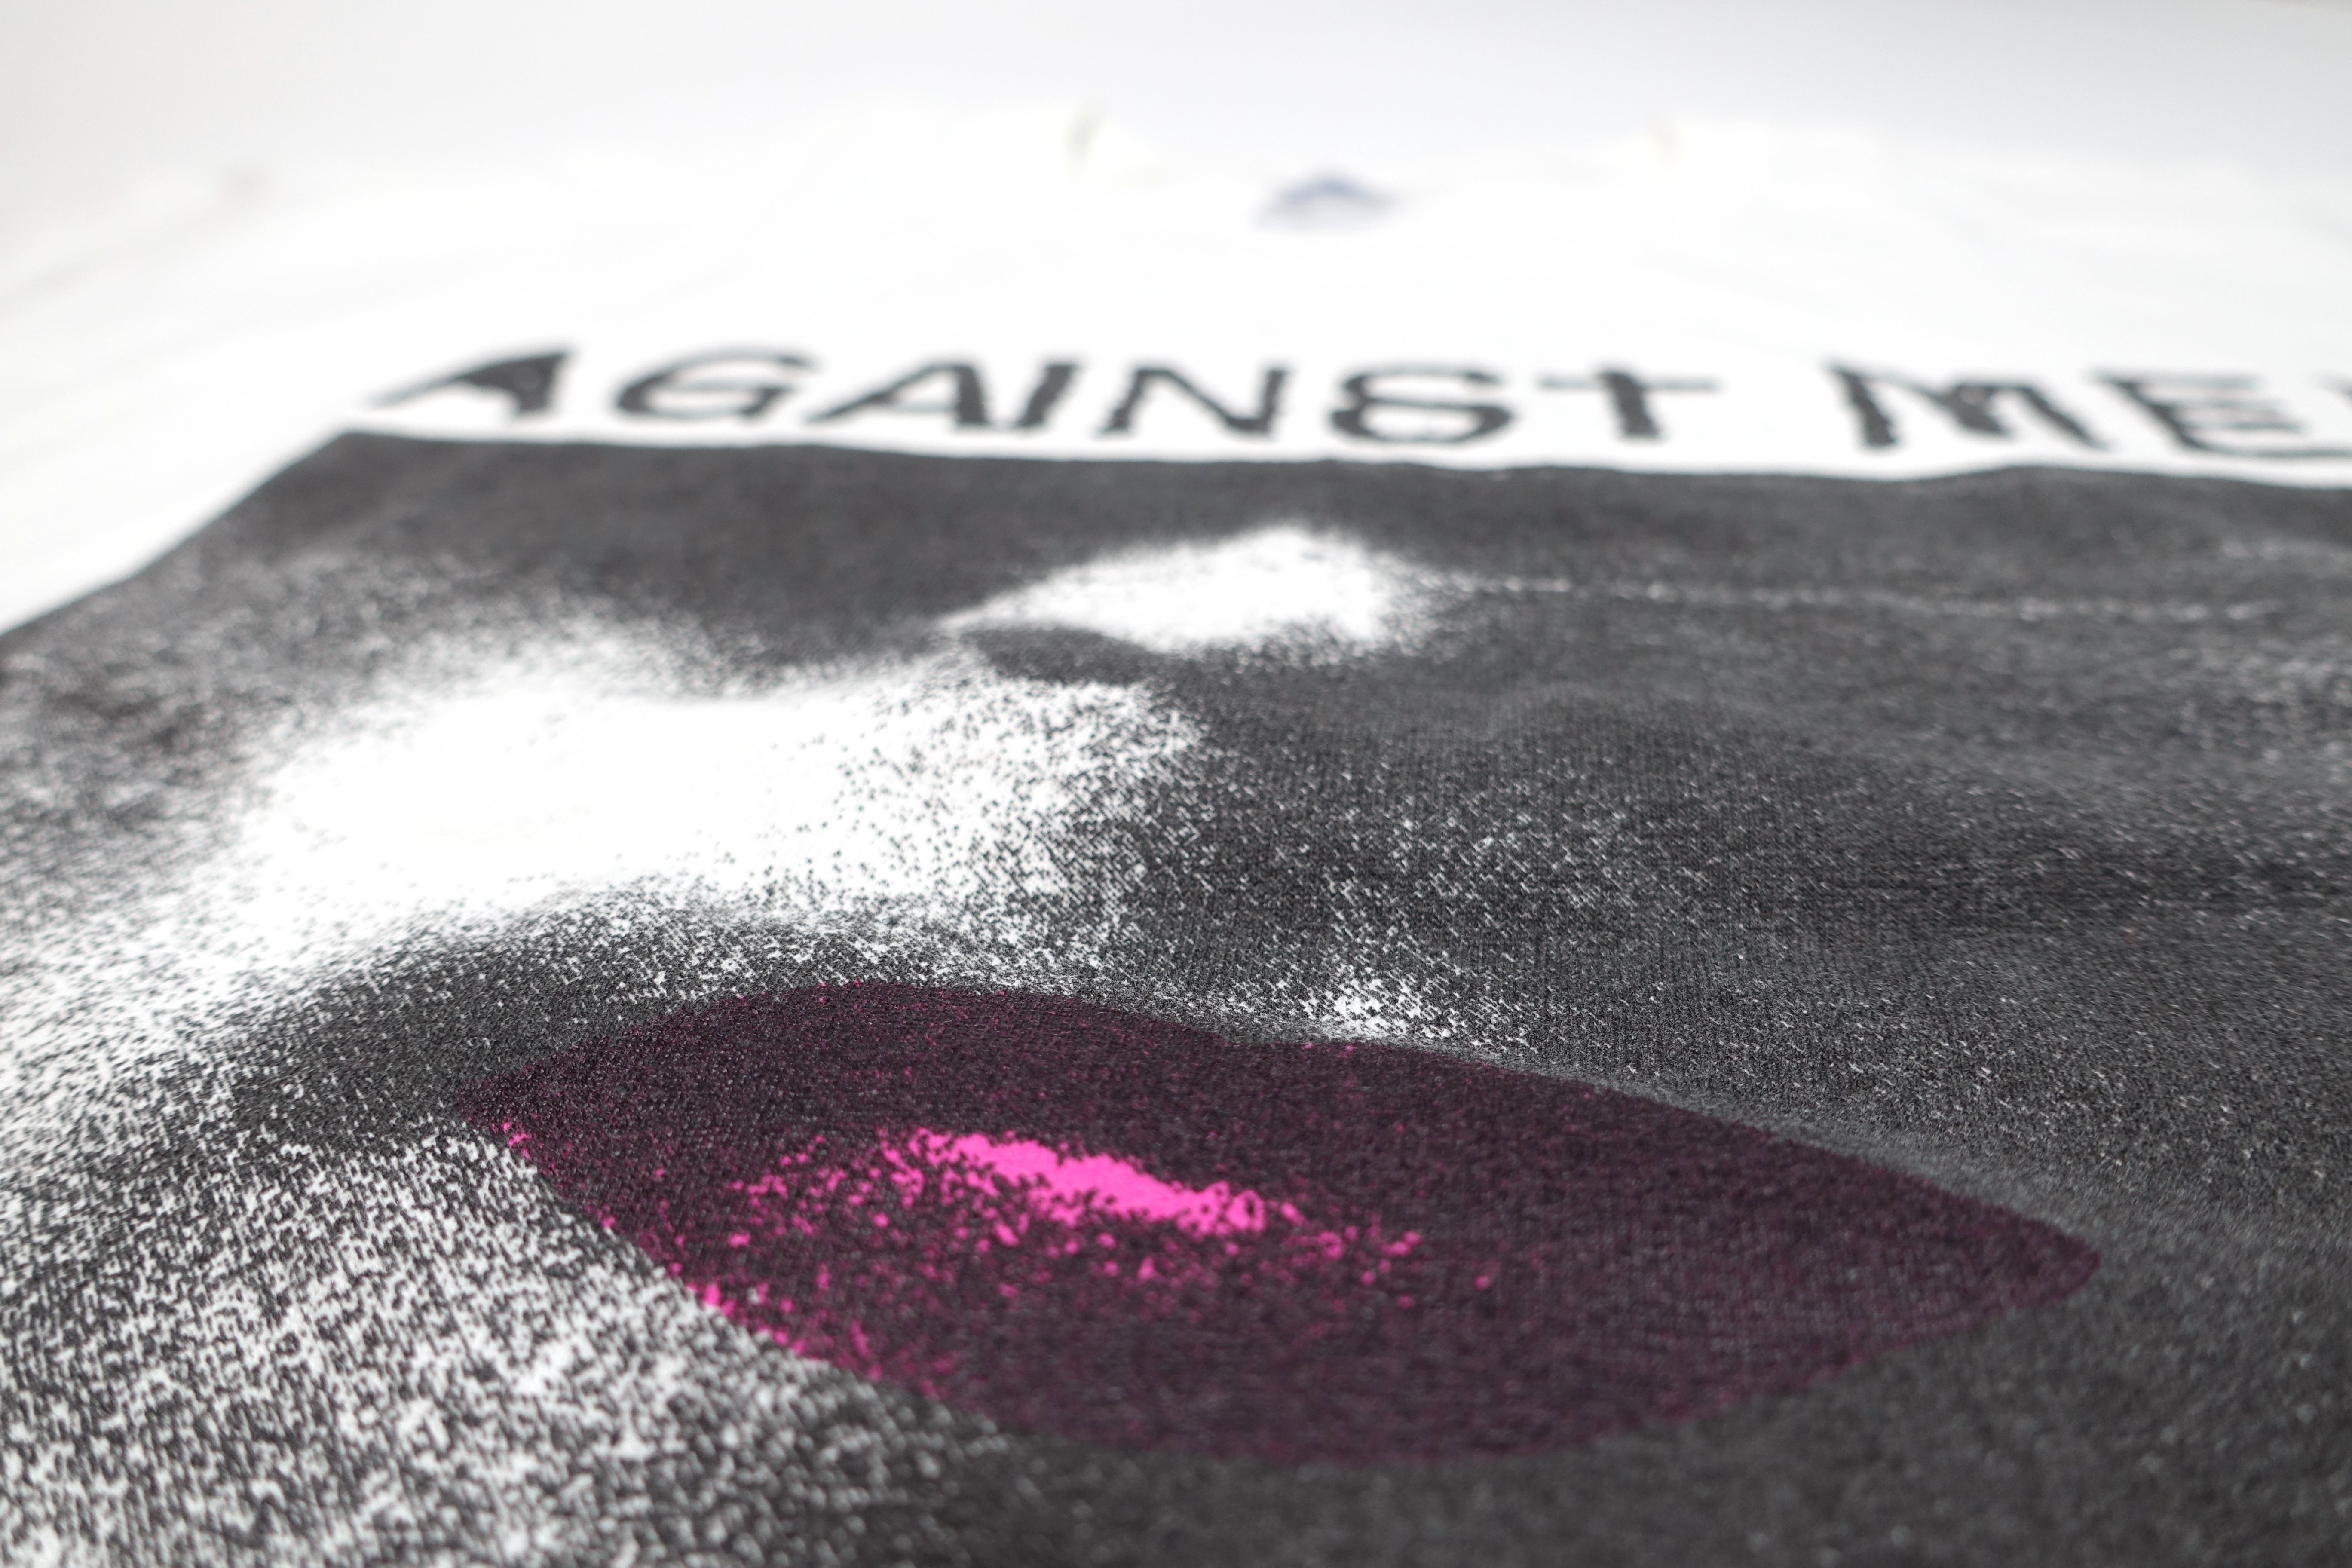 Against Me! - Transgender Dysphoria Blues 2014 Tour Shirt Size Large